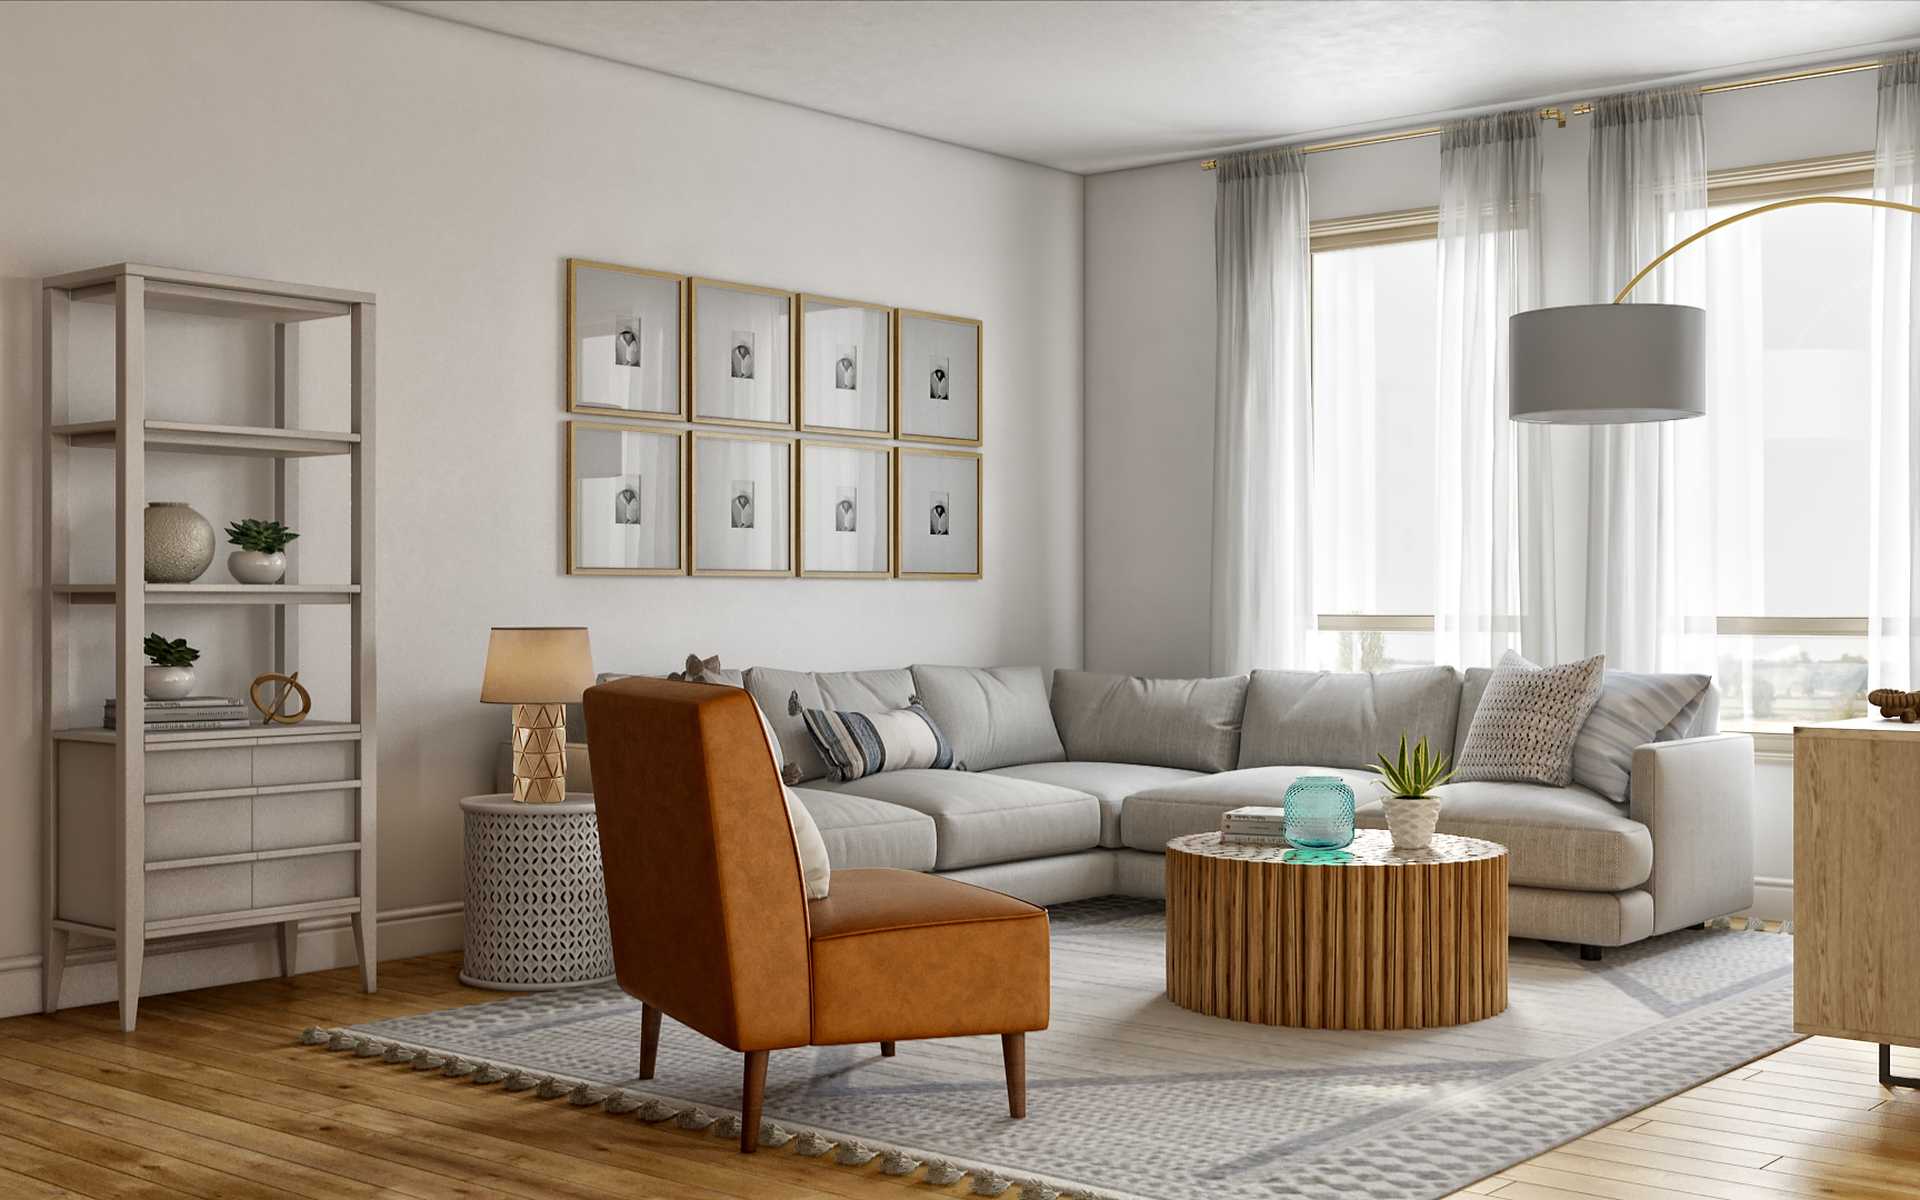 Transitional Living Room Design by Havenly Interior Designer Kate